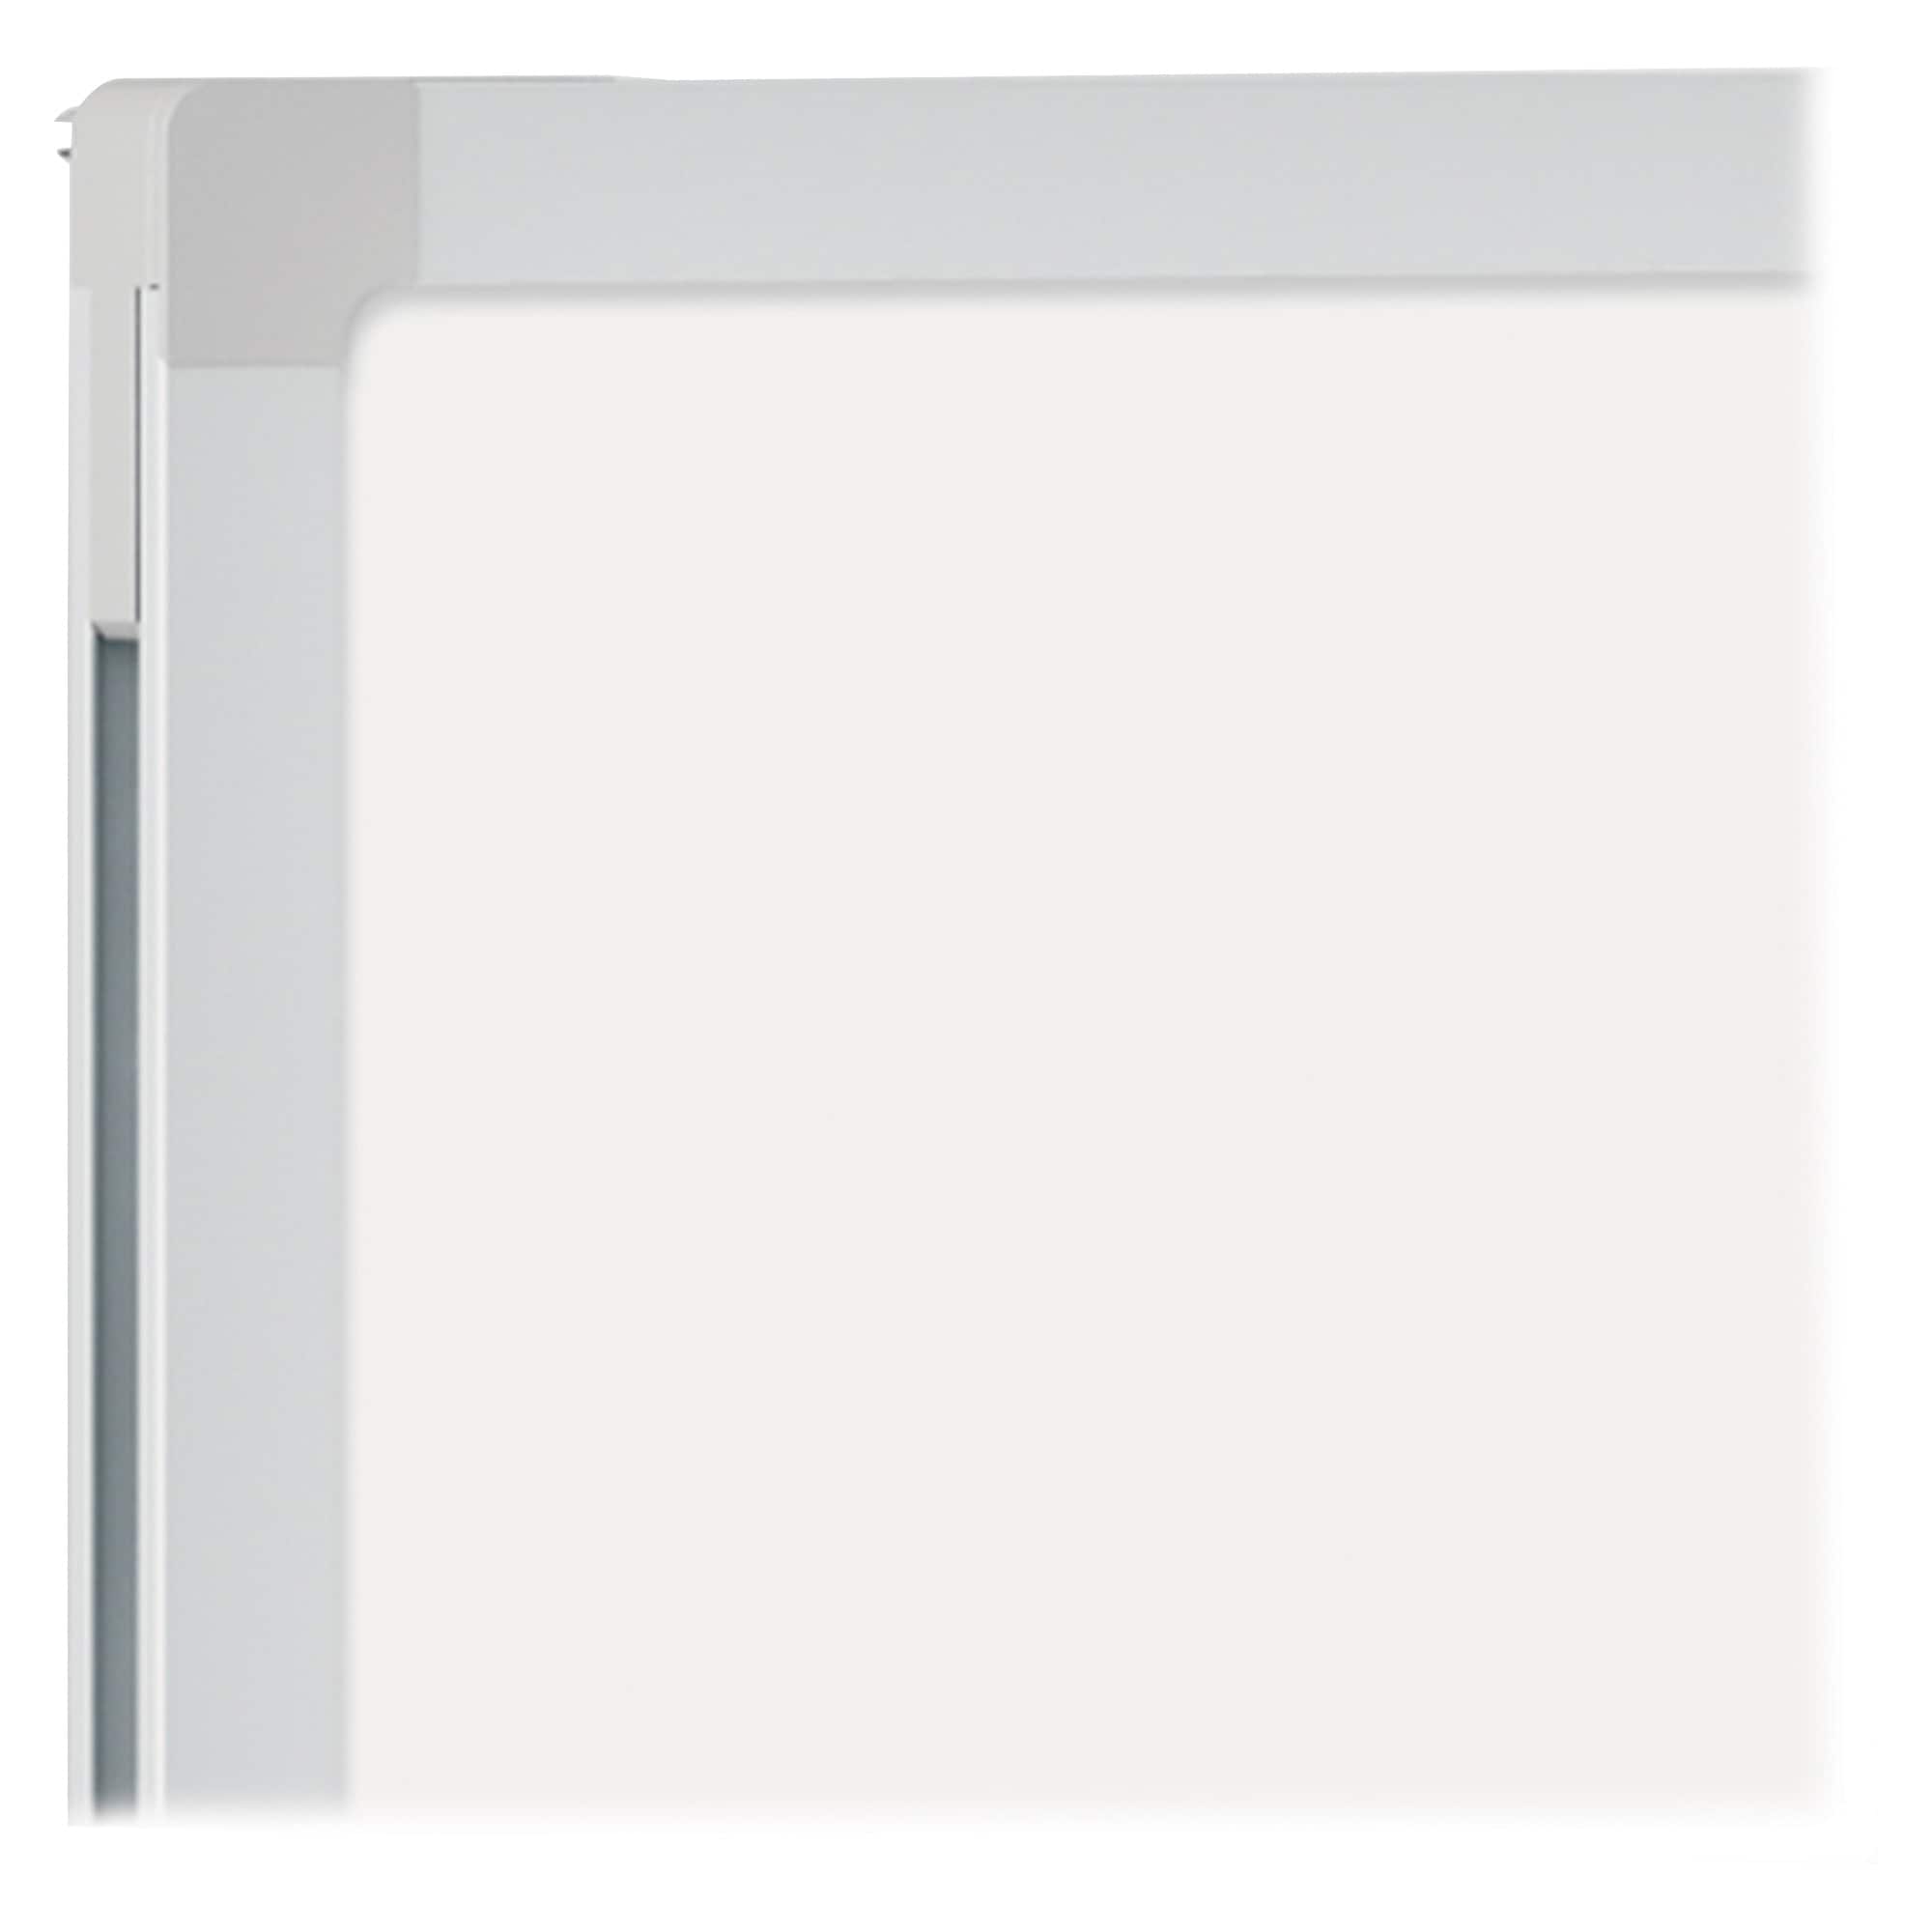 Basics Magnetic Framed Dry Erase White Board, 18 x 24 inch